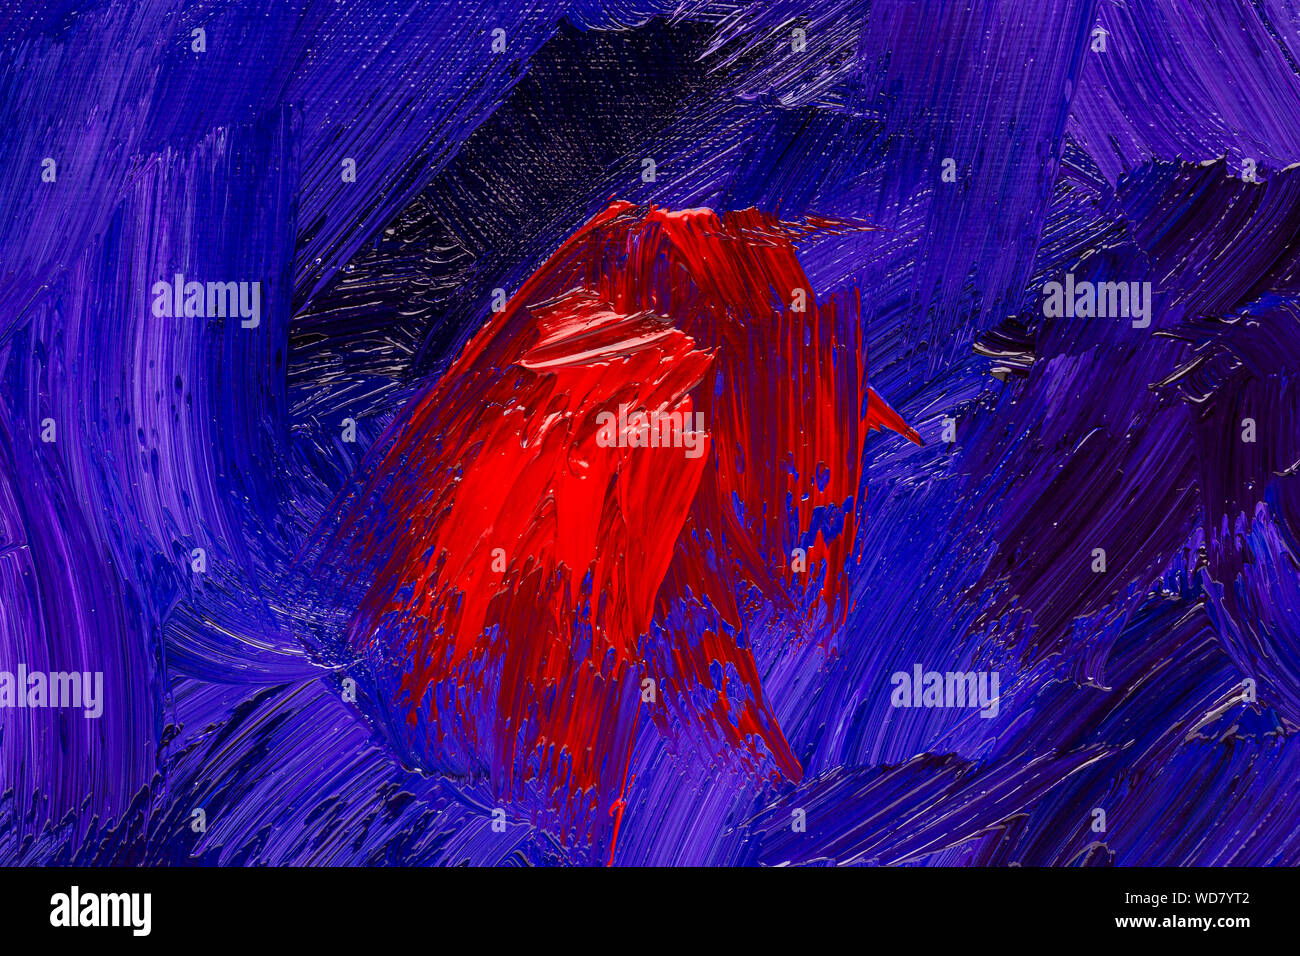 Résumé rouge, bleu et violet les traits de pinceau, véritable peinture à l'huile sur toile à la main libre, full frame Banque D'Images